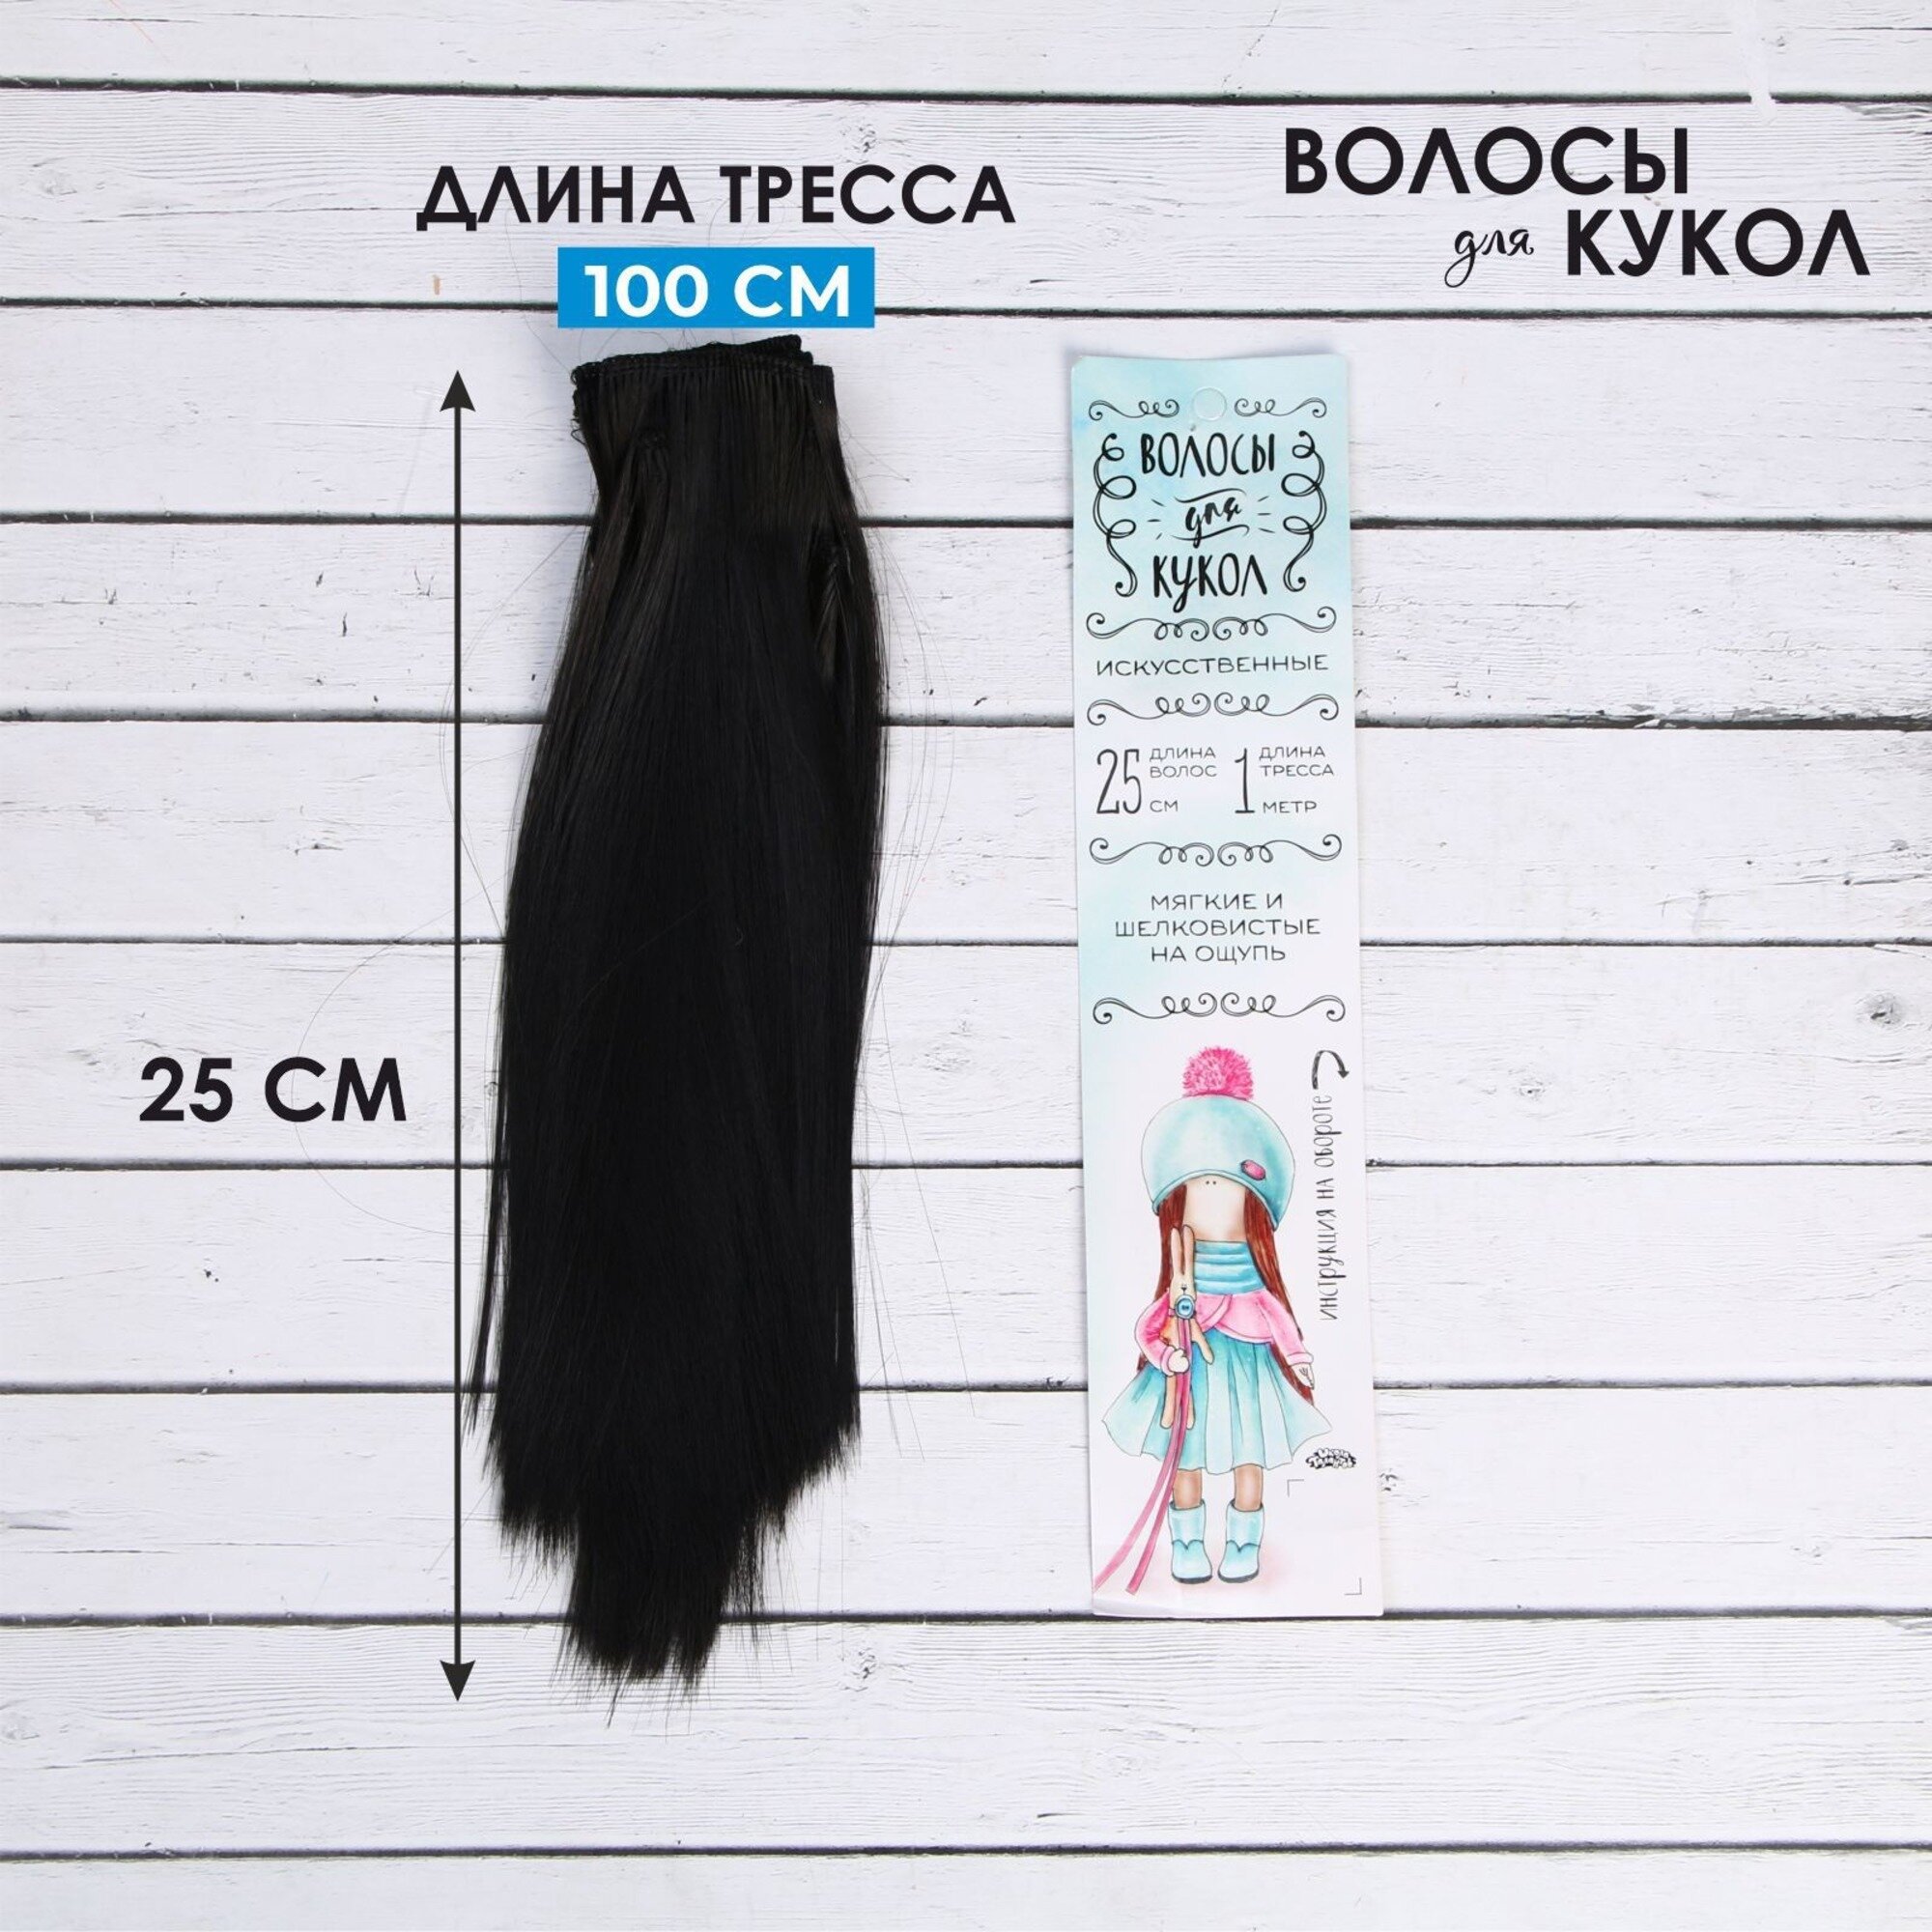 Волосы - тресс для кукол "Прямые" длина волос 25 см, ширина 100 см, цвет № 1В